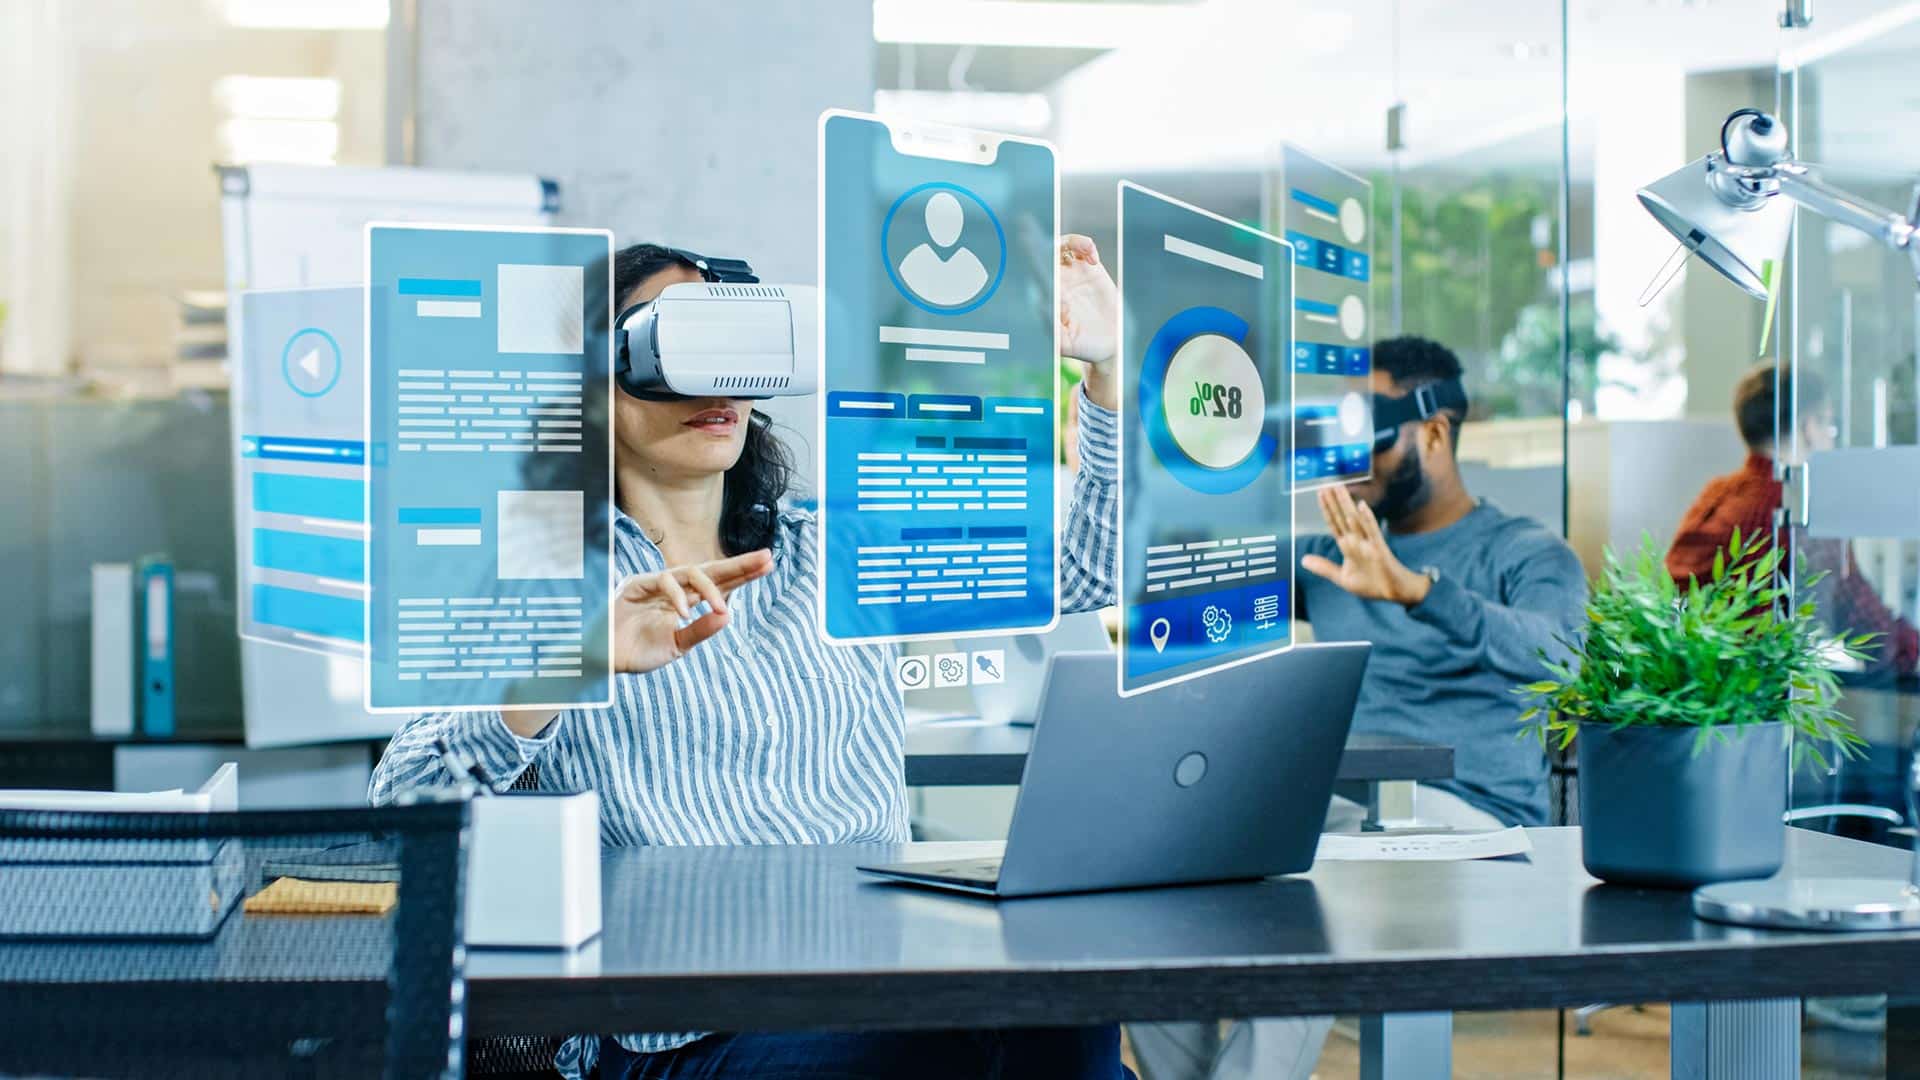 Azubi-Recruiting VR im Unternehmen mit 360° Content